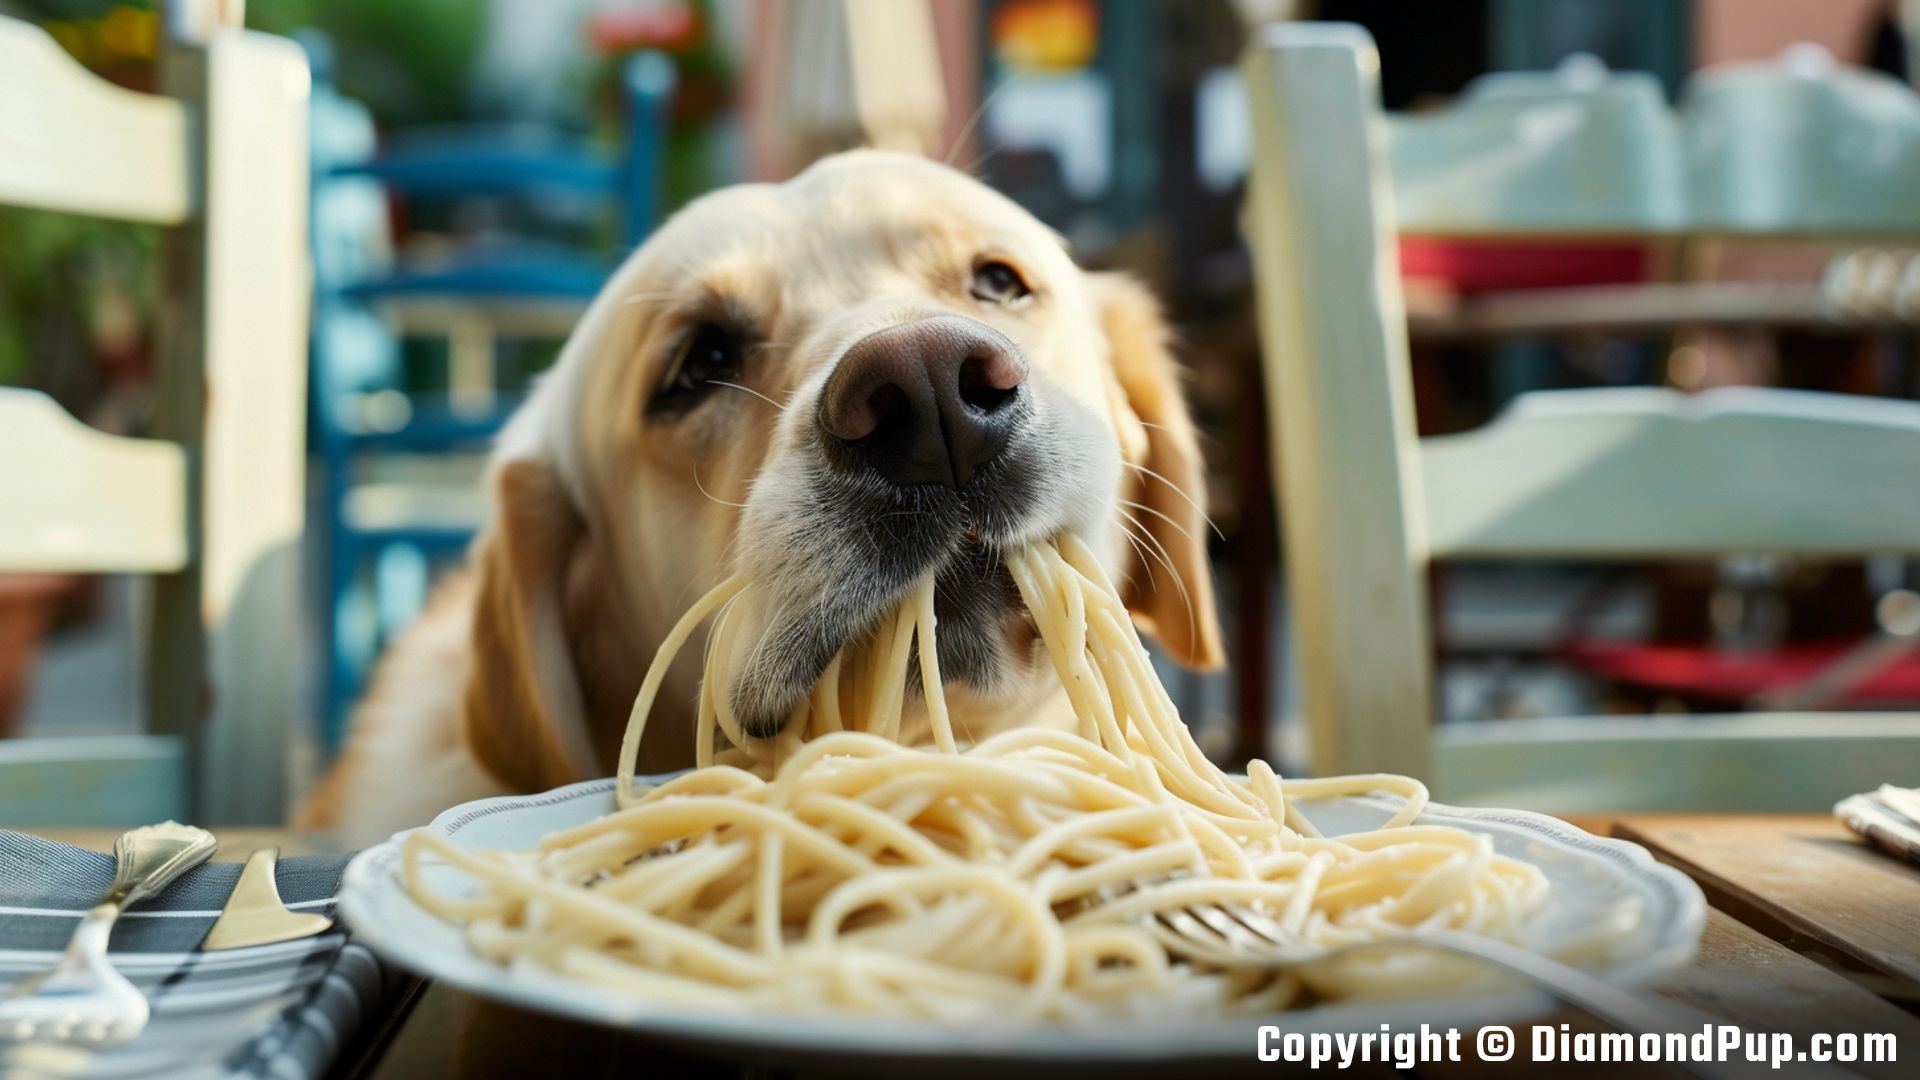 Image of an Adorable Labrador Eating Pasta